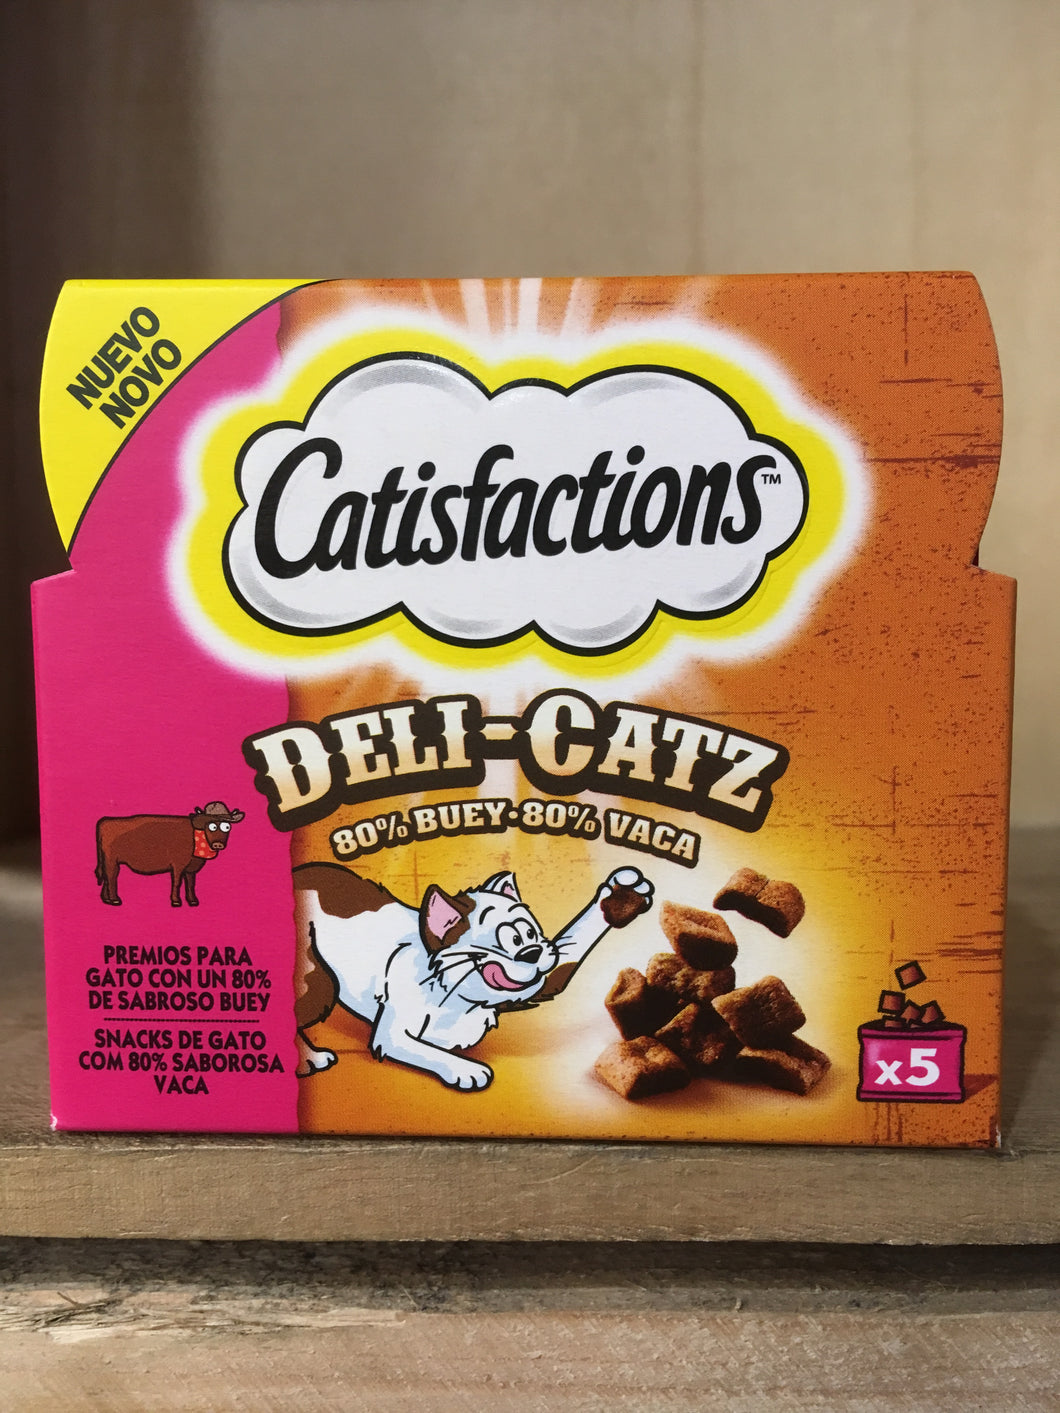 Dreamies Catisfactions Deli-Catz Beef Meaty Cat Treats 5 Pack (5x5g)